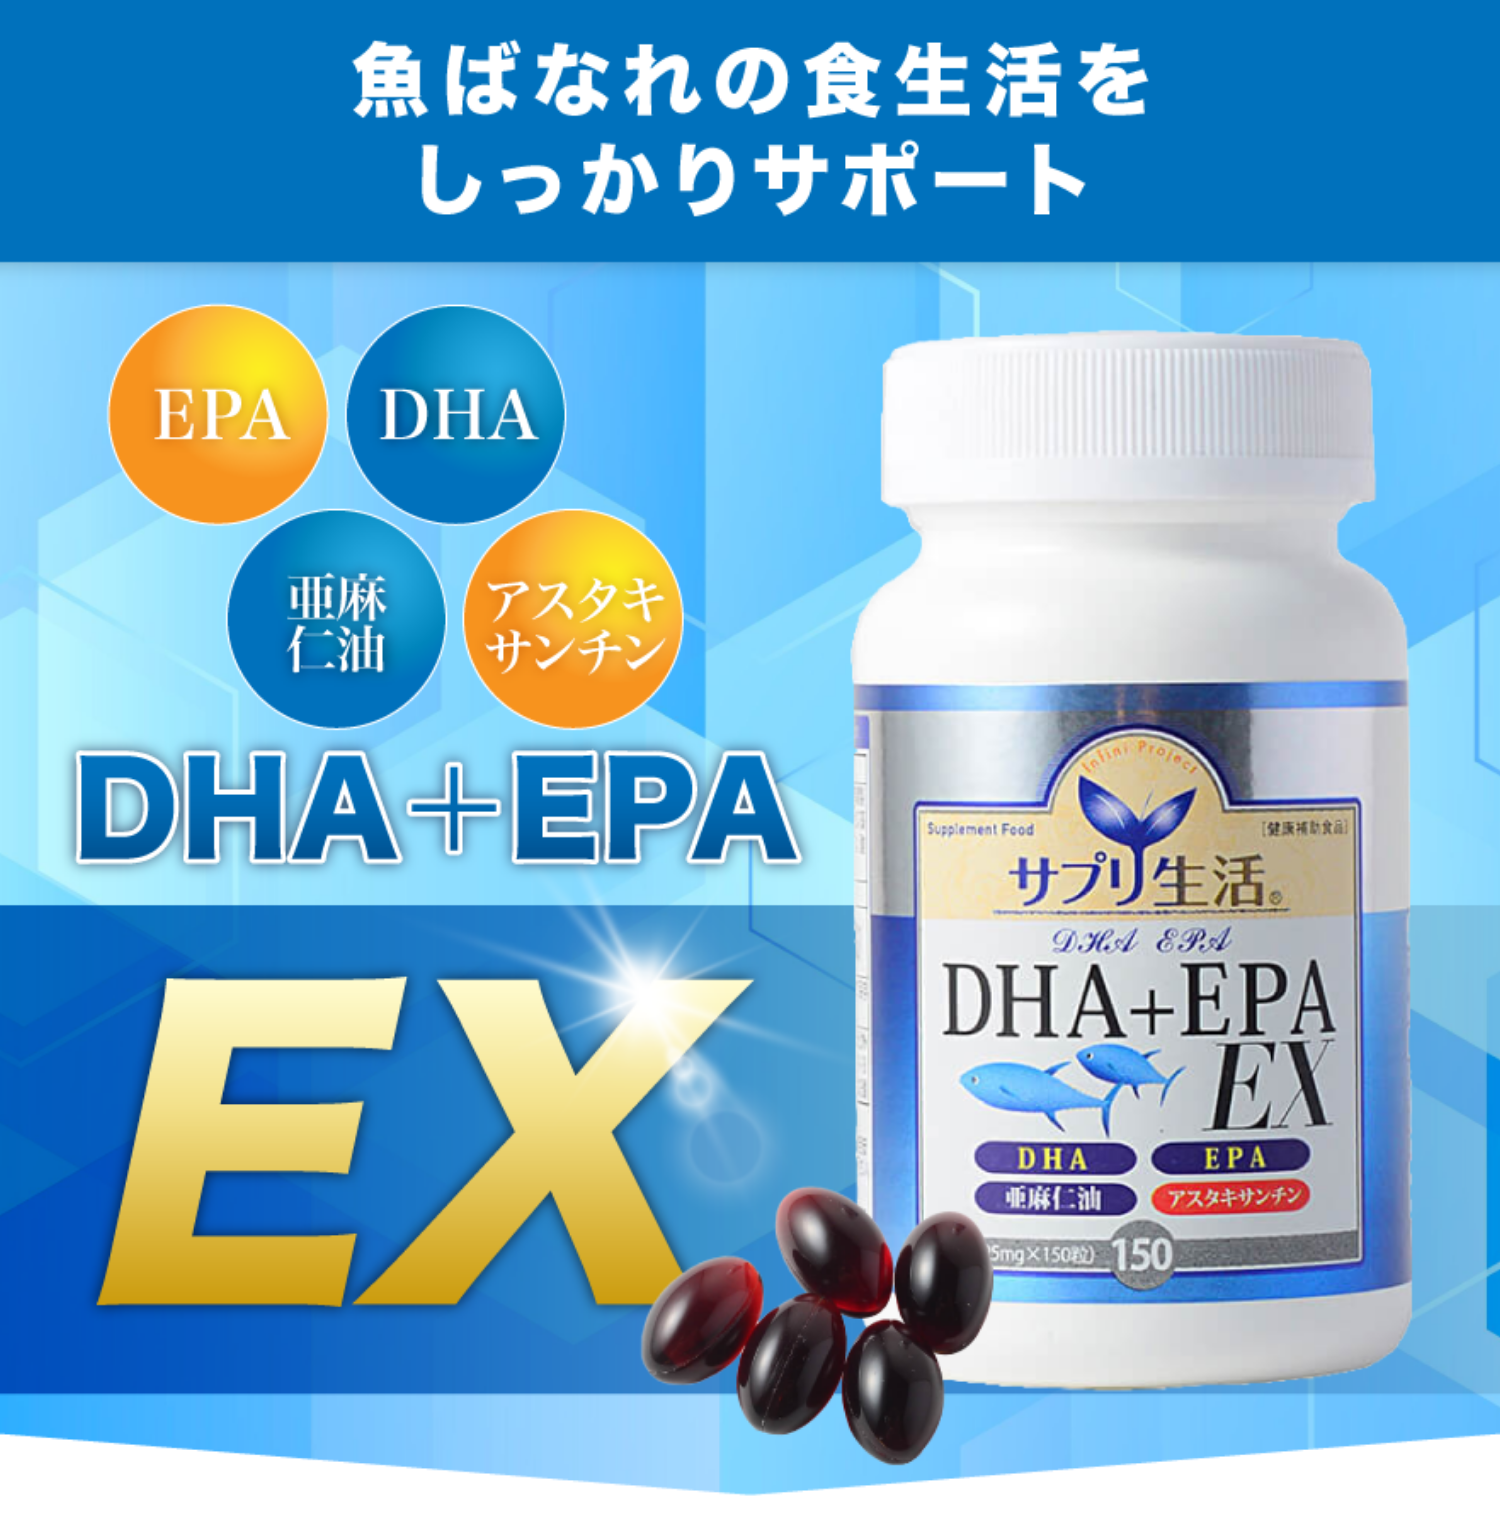 DHA＋EPA EX